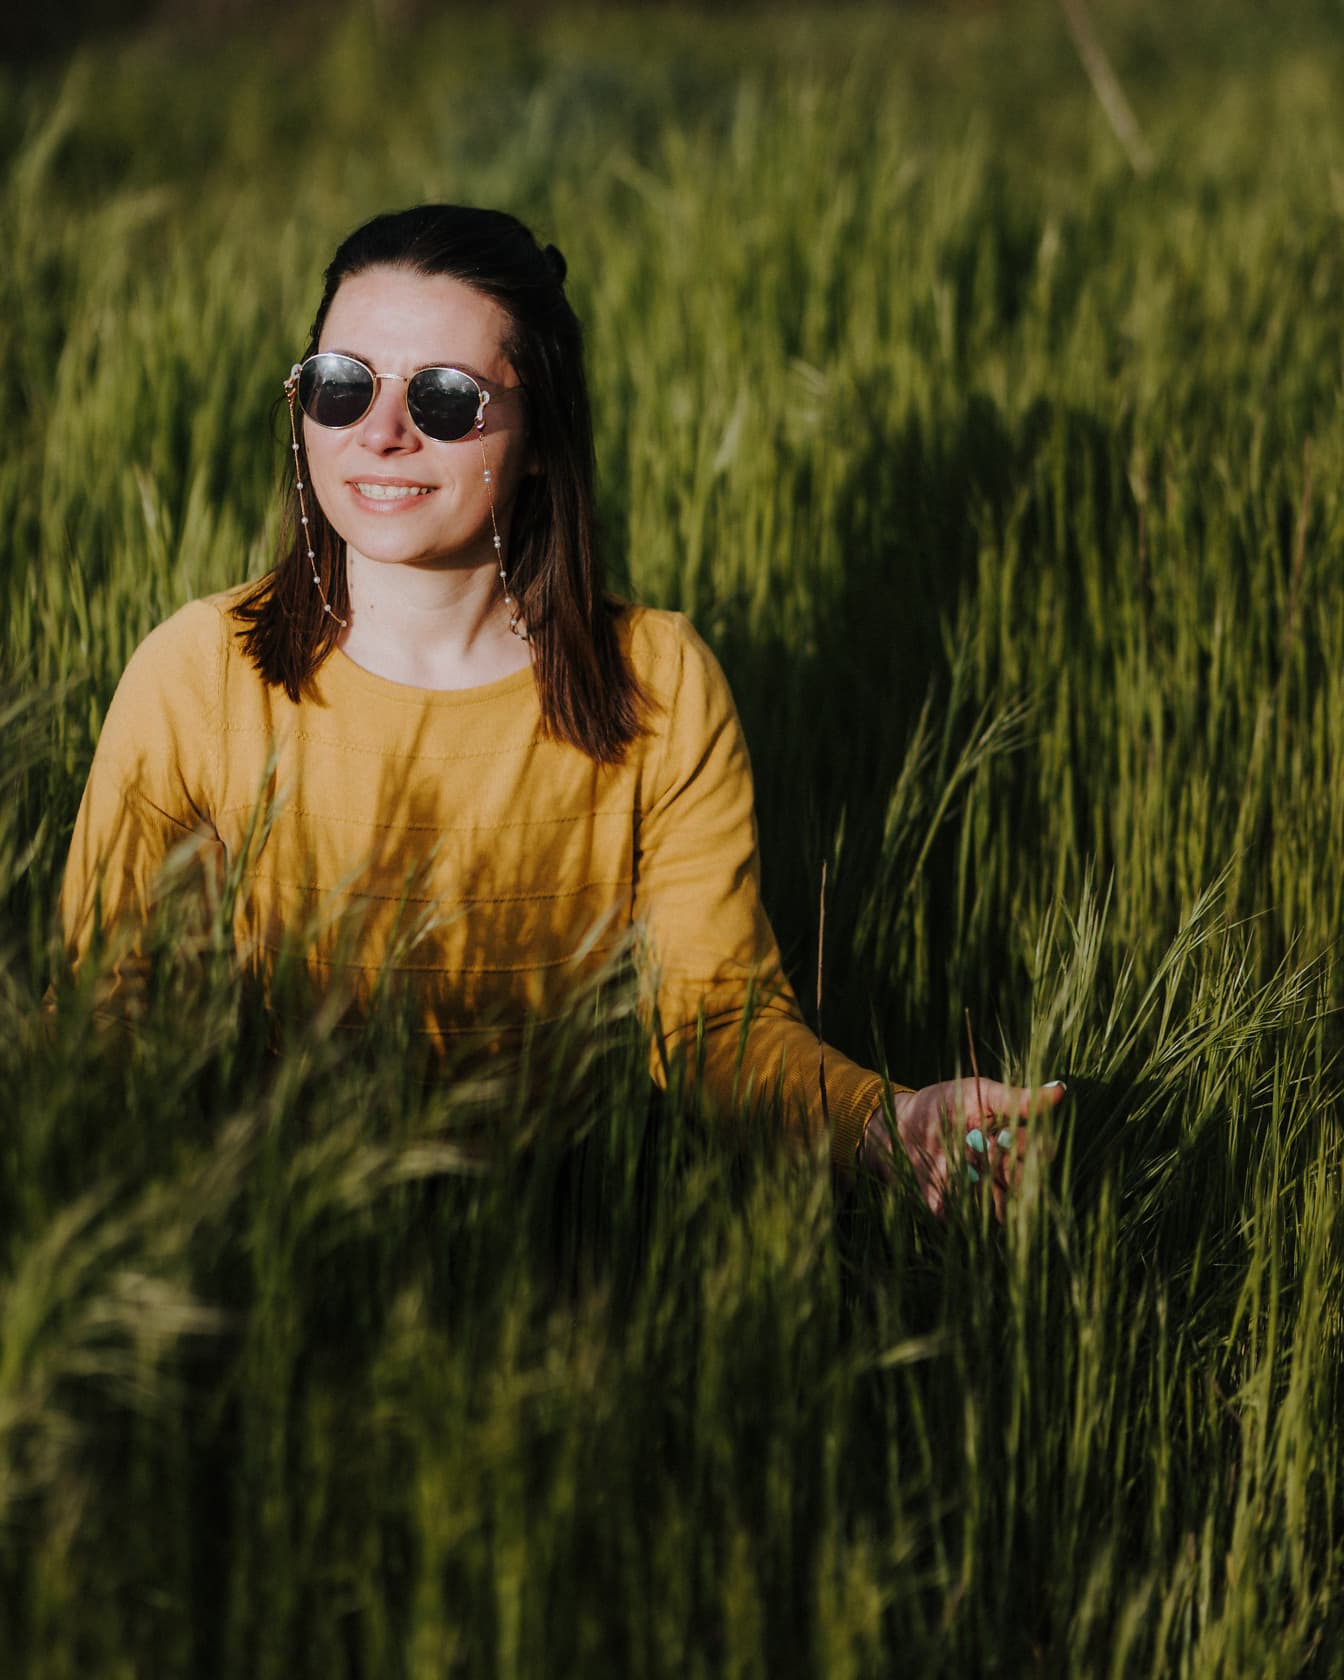 Veselá žena usmívající se v zeleném pšeničném poli za slunečného dne